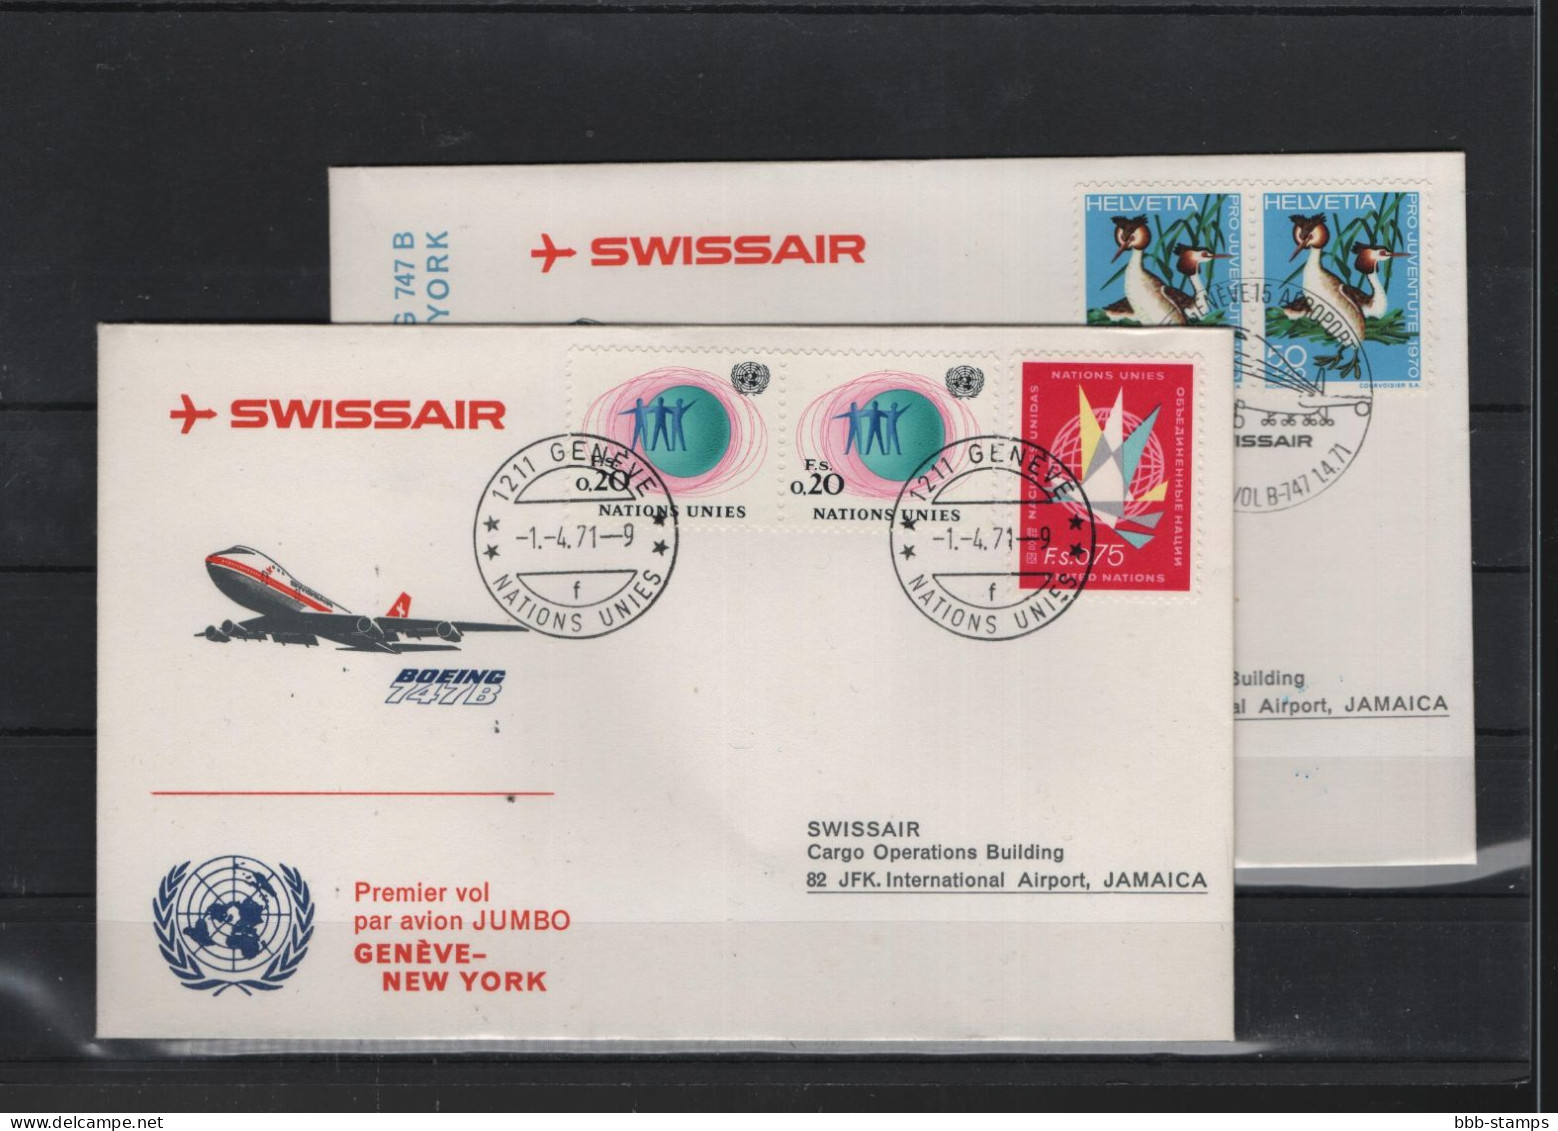 Schweiz Luftpost FFC Swissair 1.4.1971 Genf - New York VV - Primi Voli